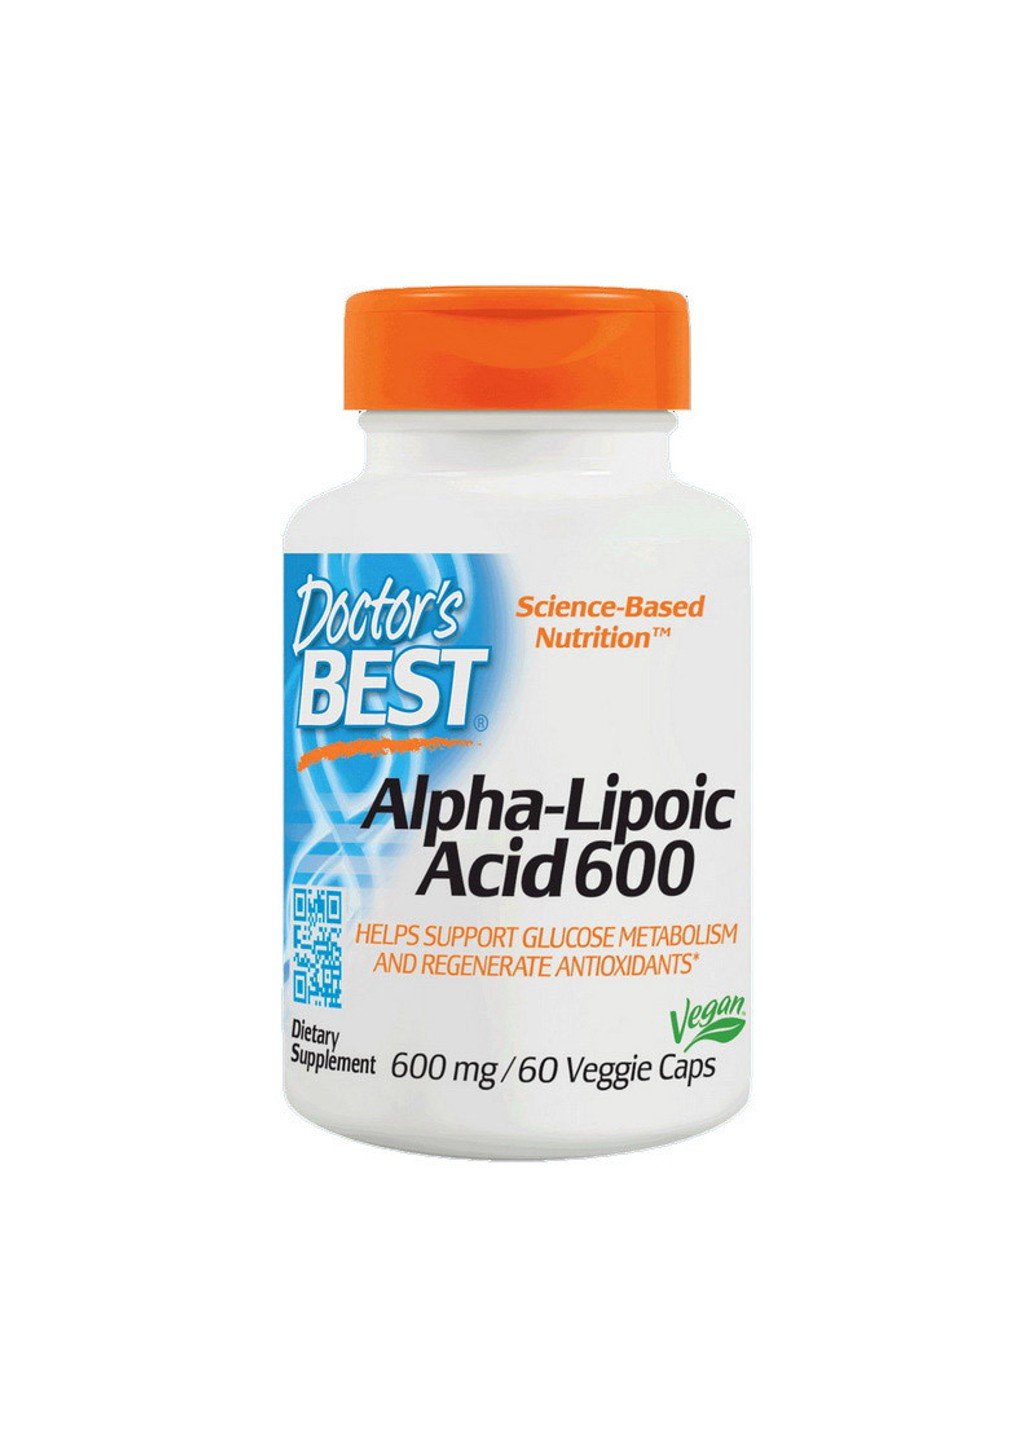 Альфа-ліпоєва кислота Alpha-Lipoic Acid 600 (60 капс) доктор бест Doctor's Best (255409081)